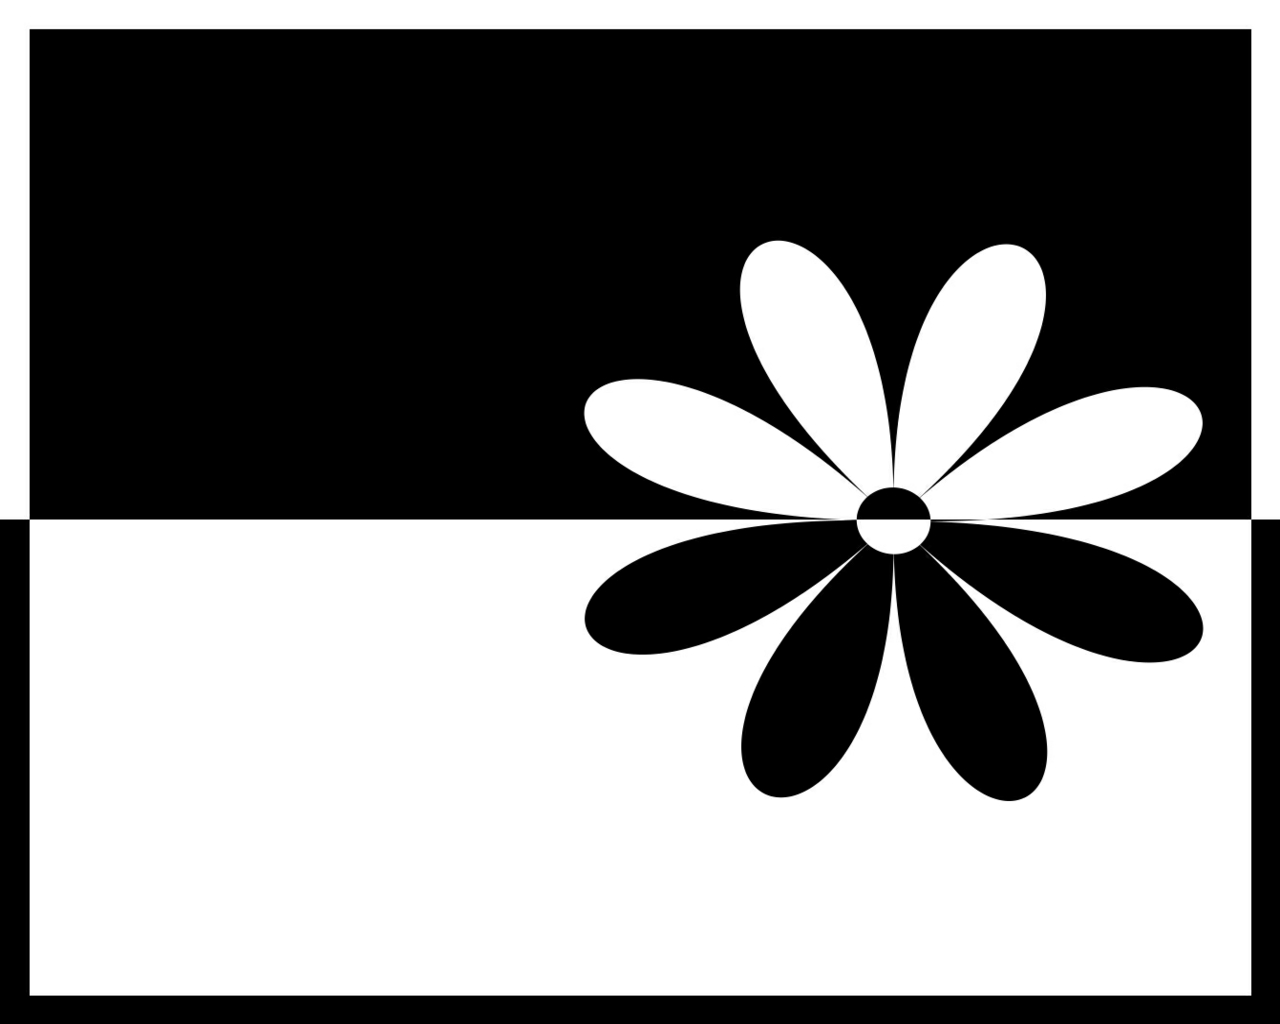 Flower Black and White Design